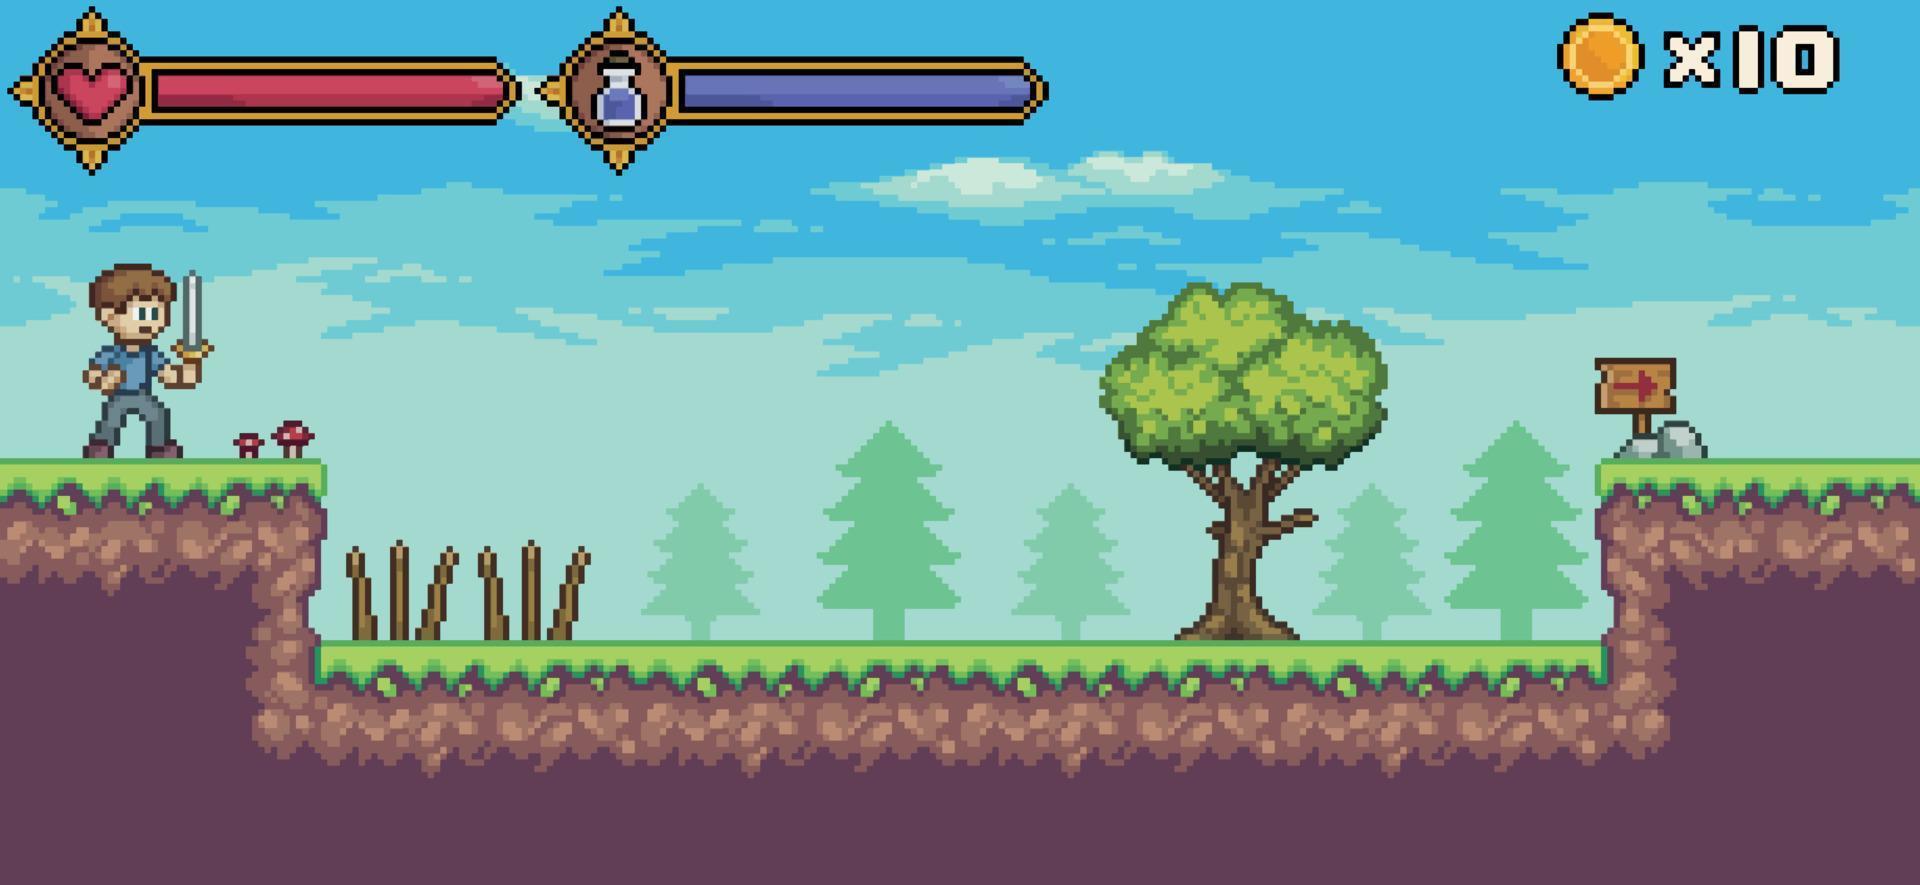 pixel art spelscen med karaktär, liv bar och mana, träd, moln vektor bakgrund för 8-bitars spel